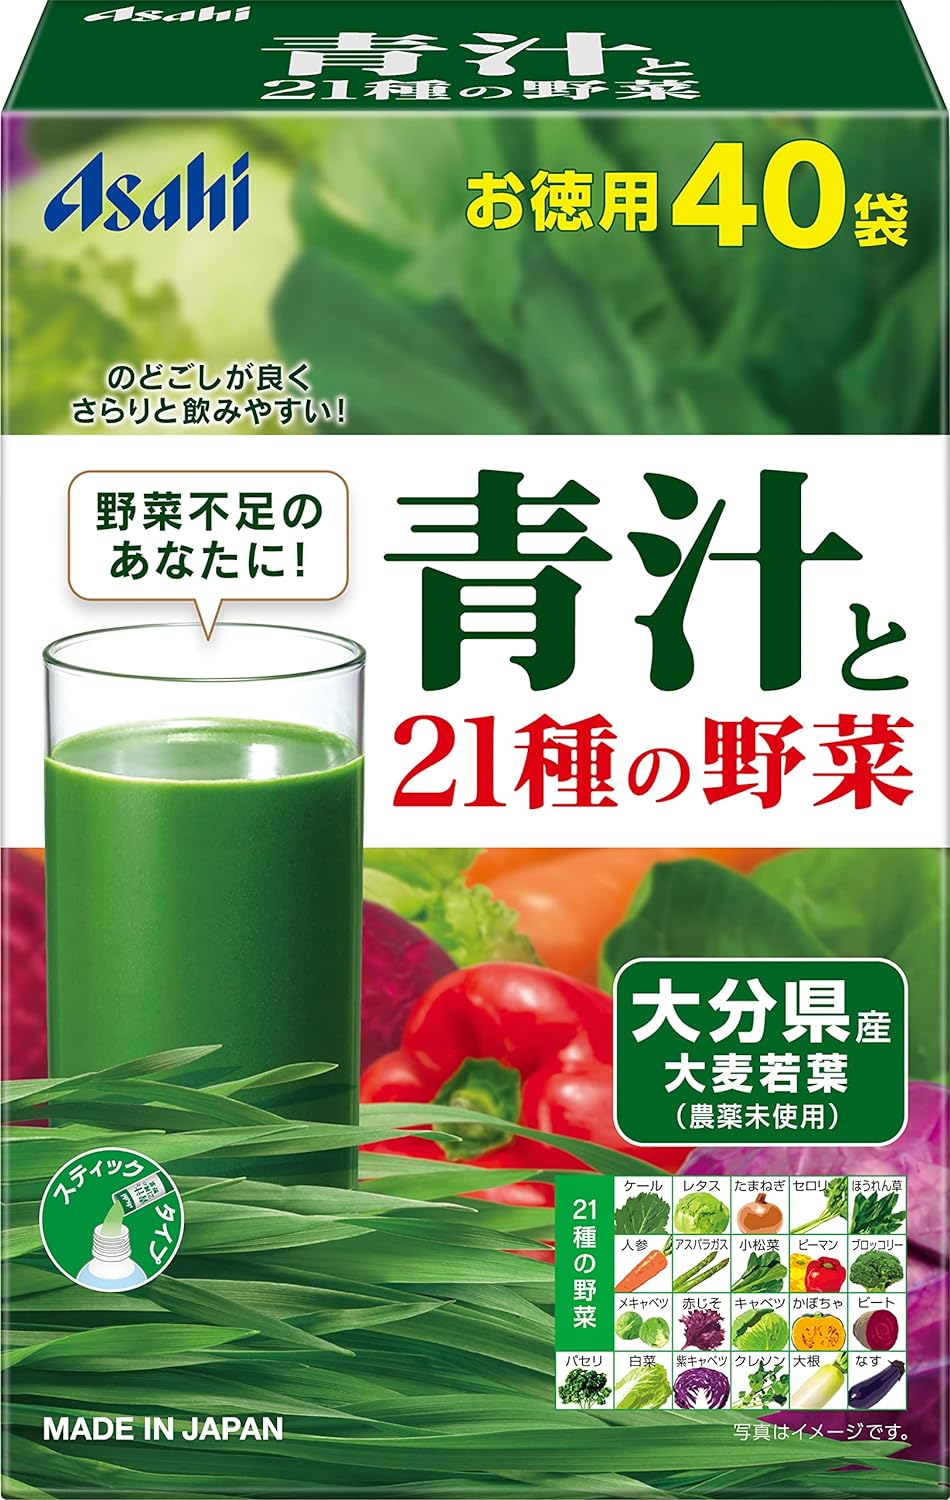 アサヒ 青汁と21種の野菜 40袋